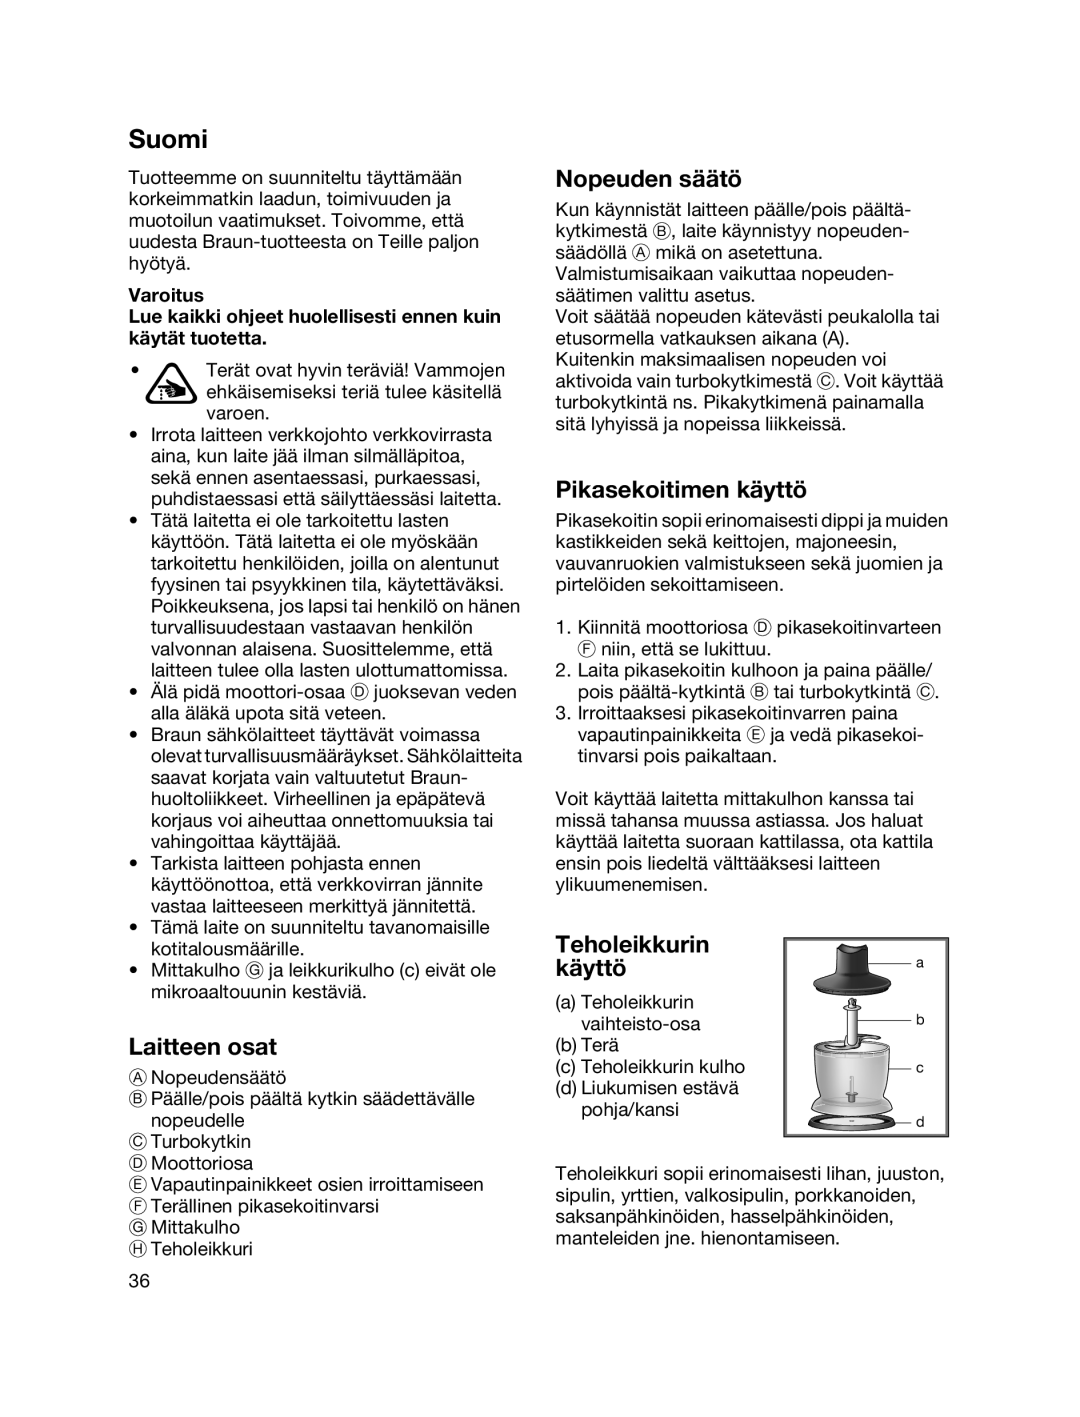 Braun MR700 manual Suomi, Nopeuden säätö, Pikasekoitimen käyttö, Laitteen osat, Teholeikkurin käyttö 